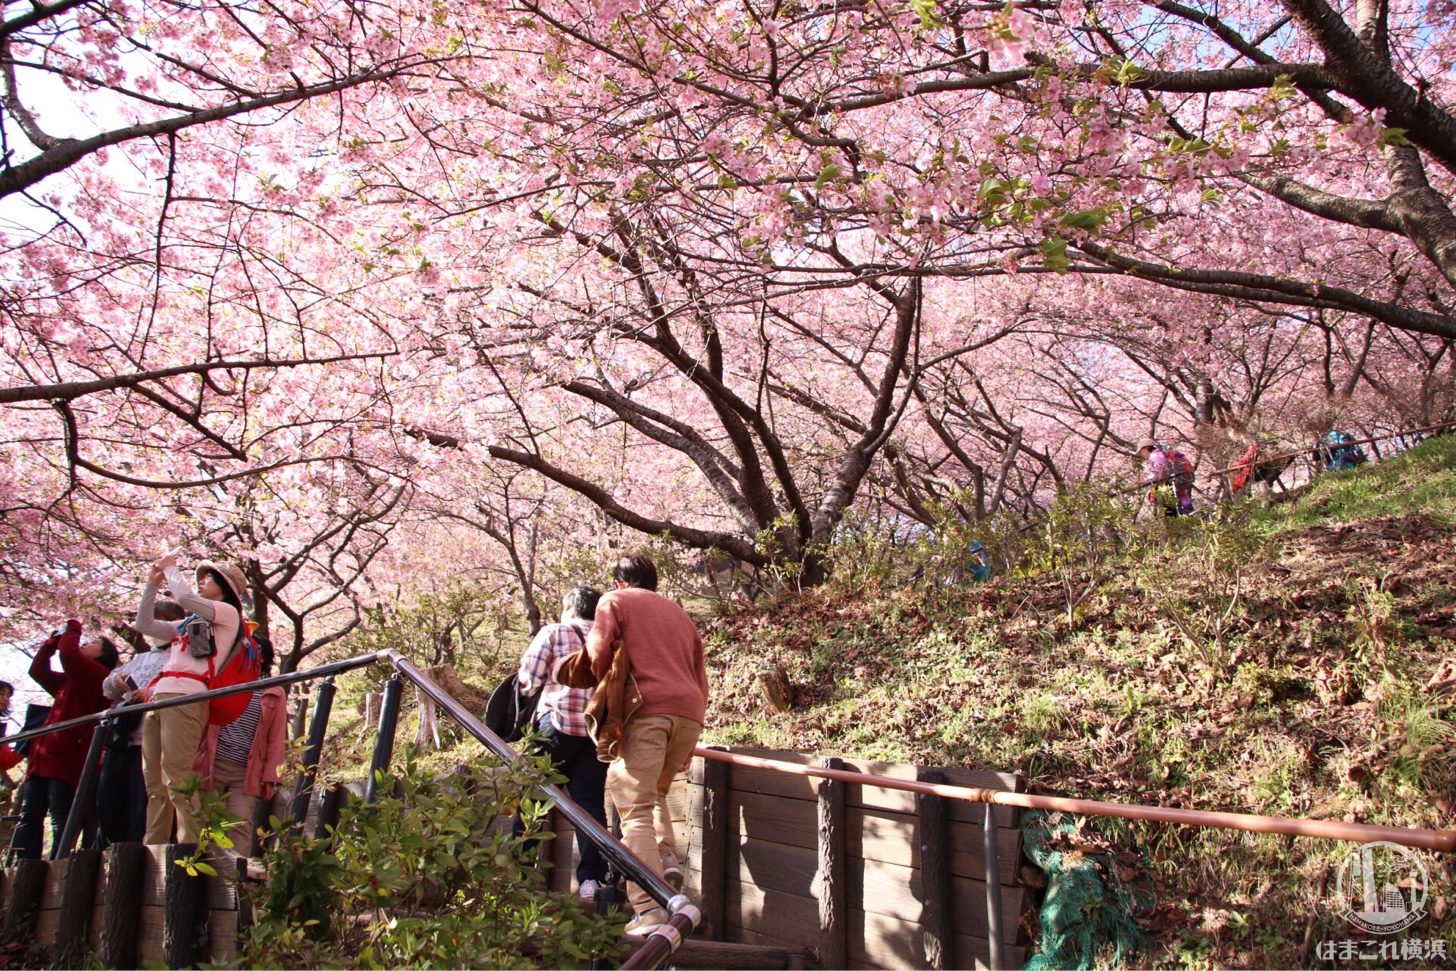 神奈川県 河津桜スポット まつだ桜まつり は上も下も河津桜 満開菜の花と富士山も はまこれ横浜